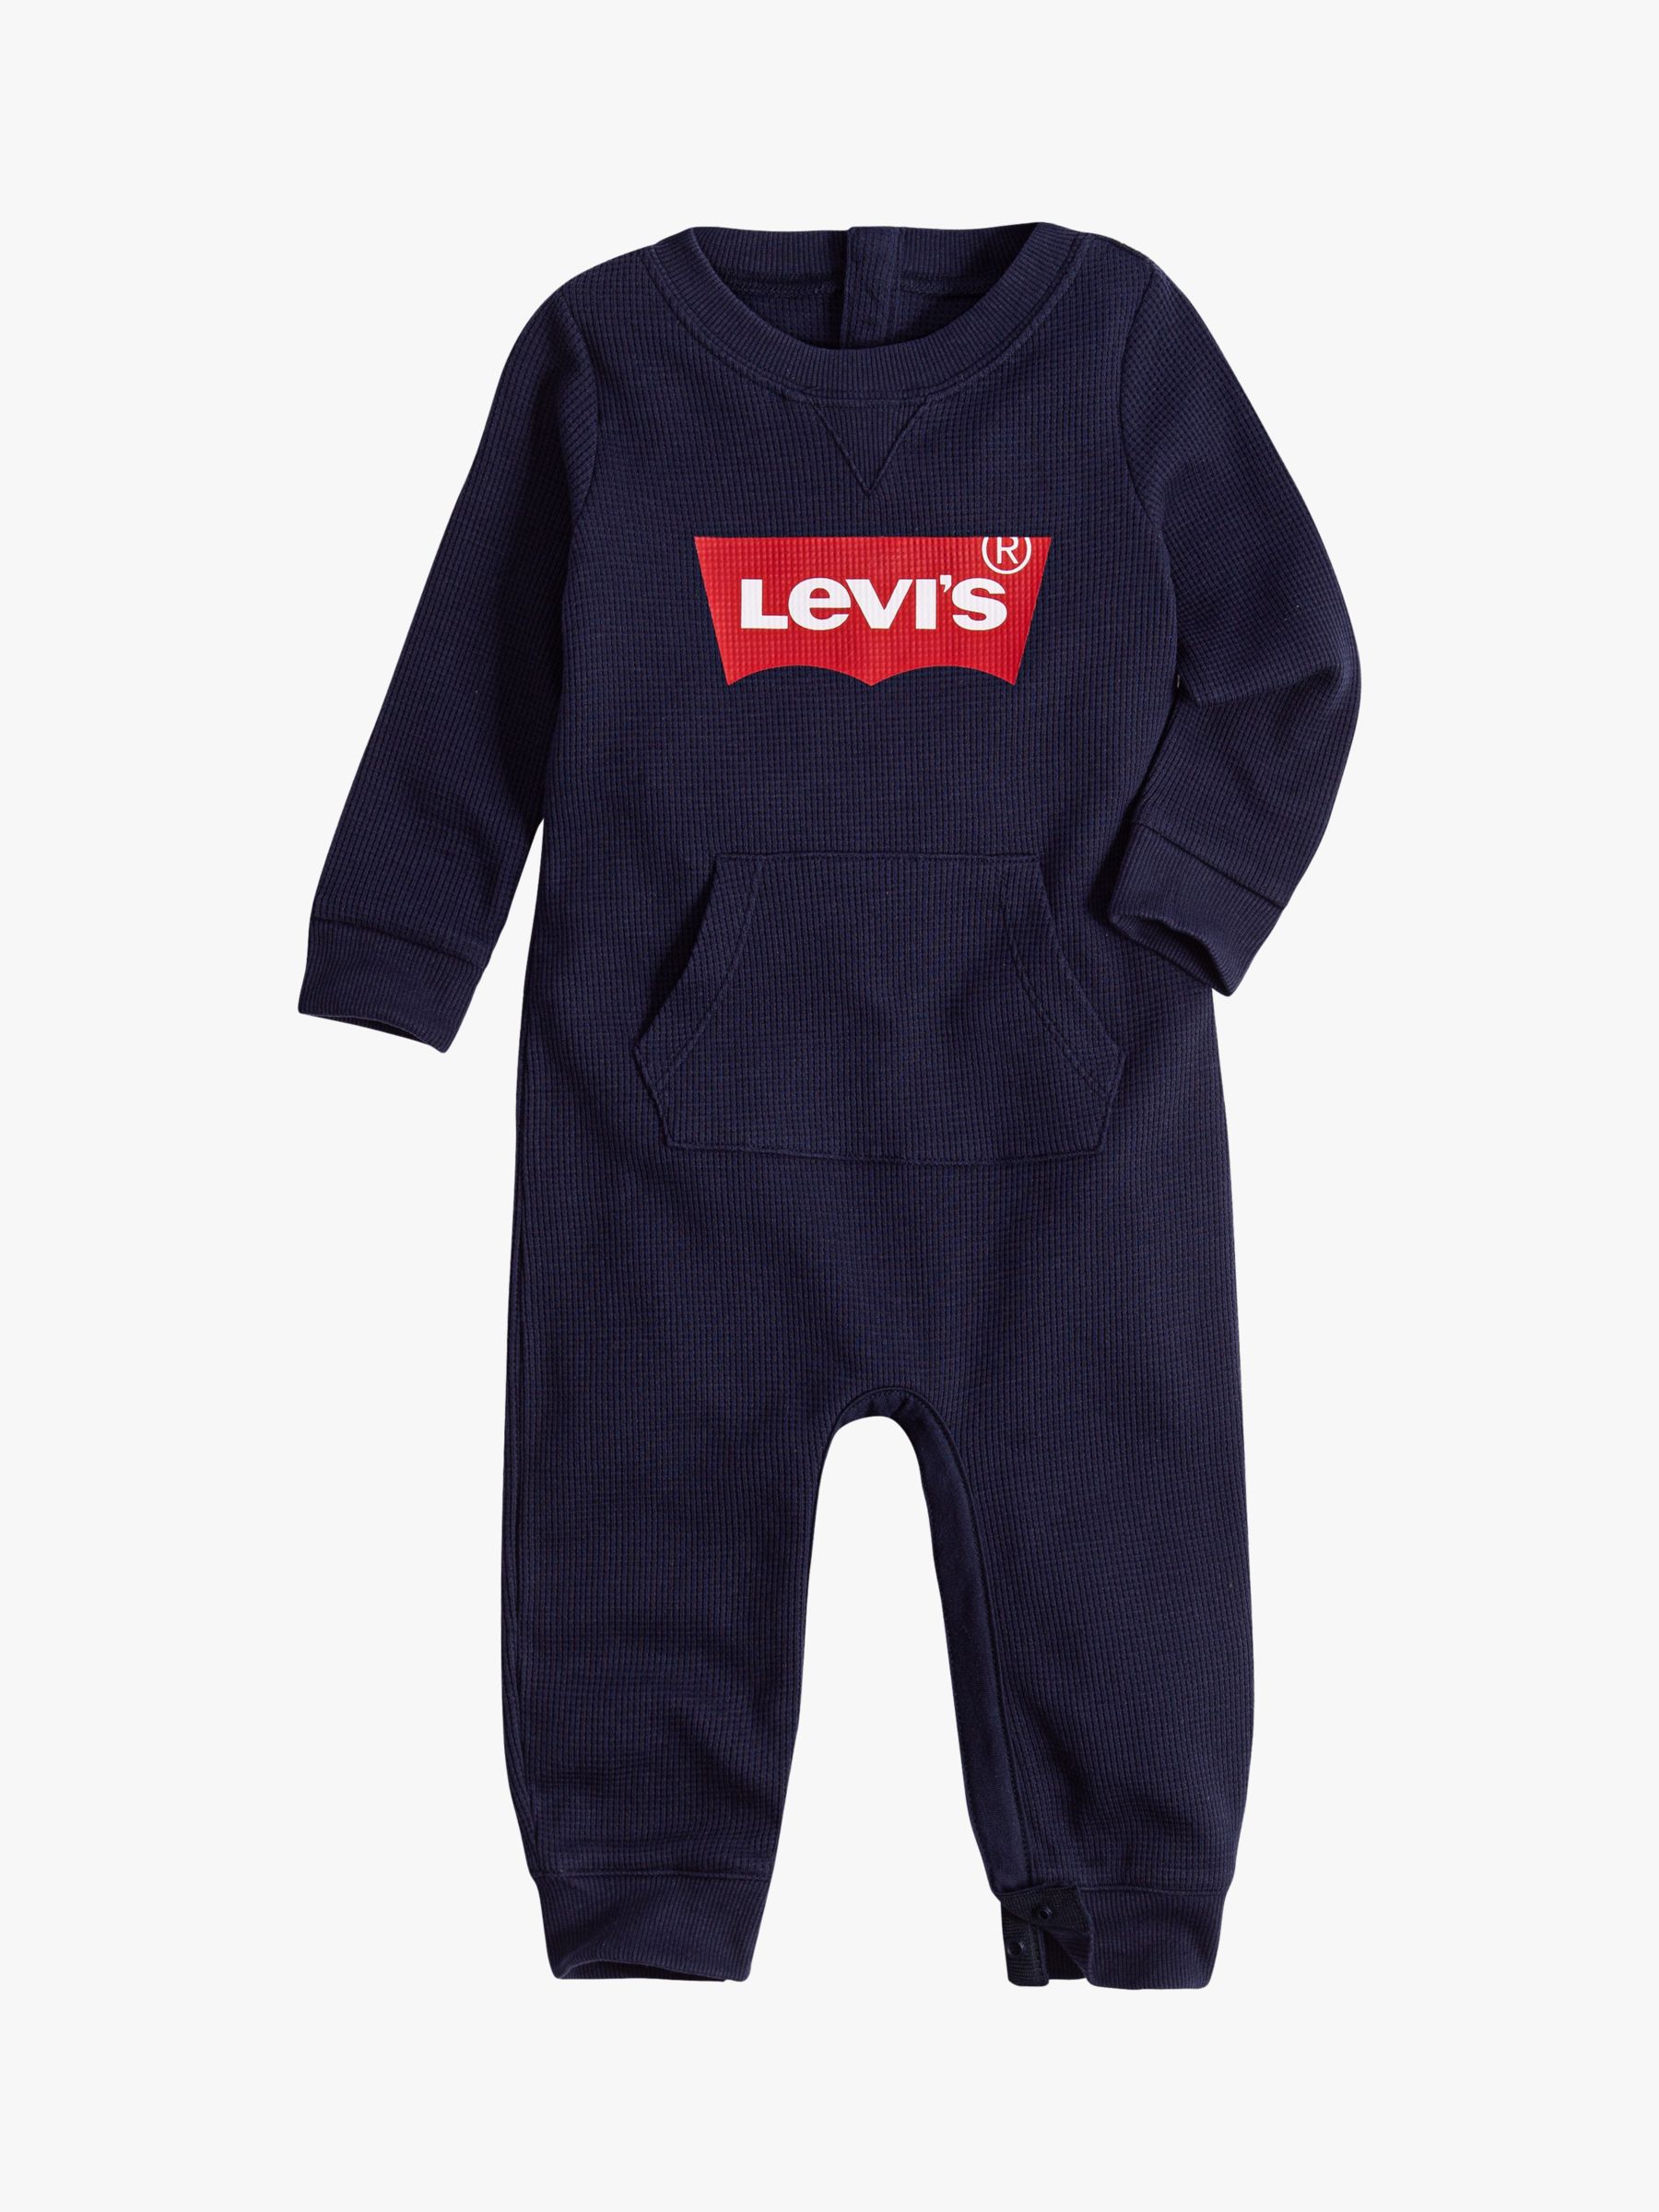 levis overalls baby